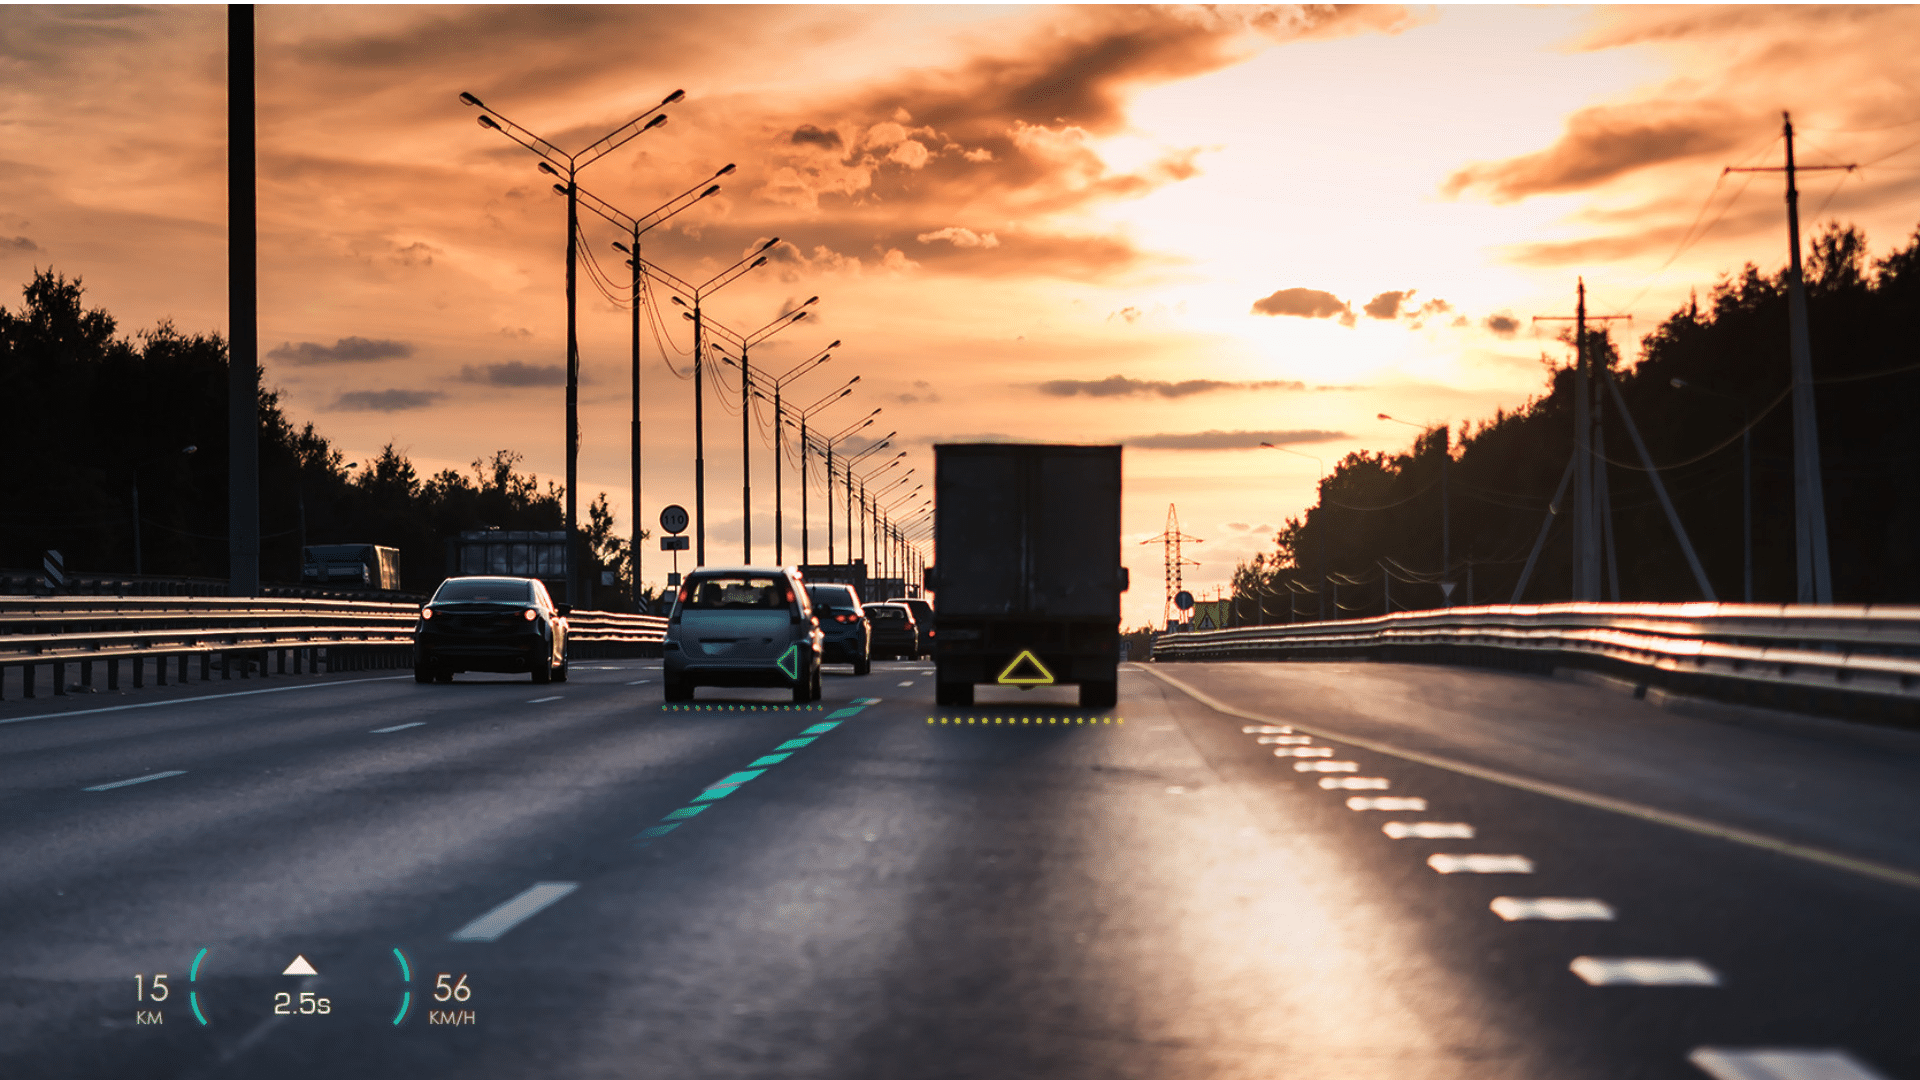 在傍晚的高速公路上，透過擴增實境抬頭顯示器提供駕駛清晰的道路輔助及車速、ADAS資訊等...。